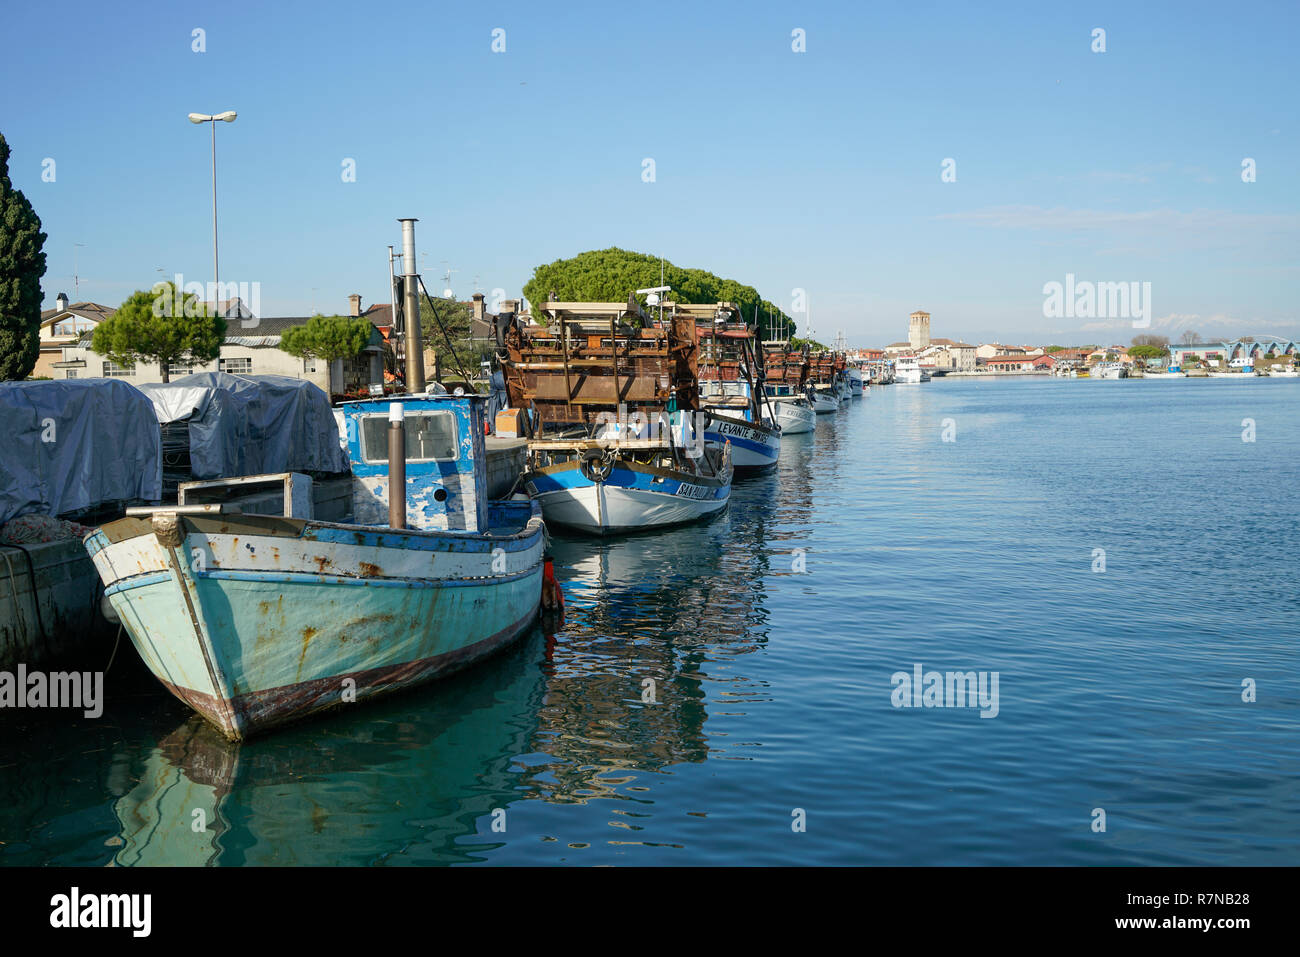 Some fishing boats moored on the pier of the port of Marano Lagunare, Friuli Venezia Giulia Region, Italy Stock Photo